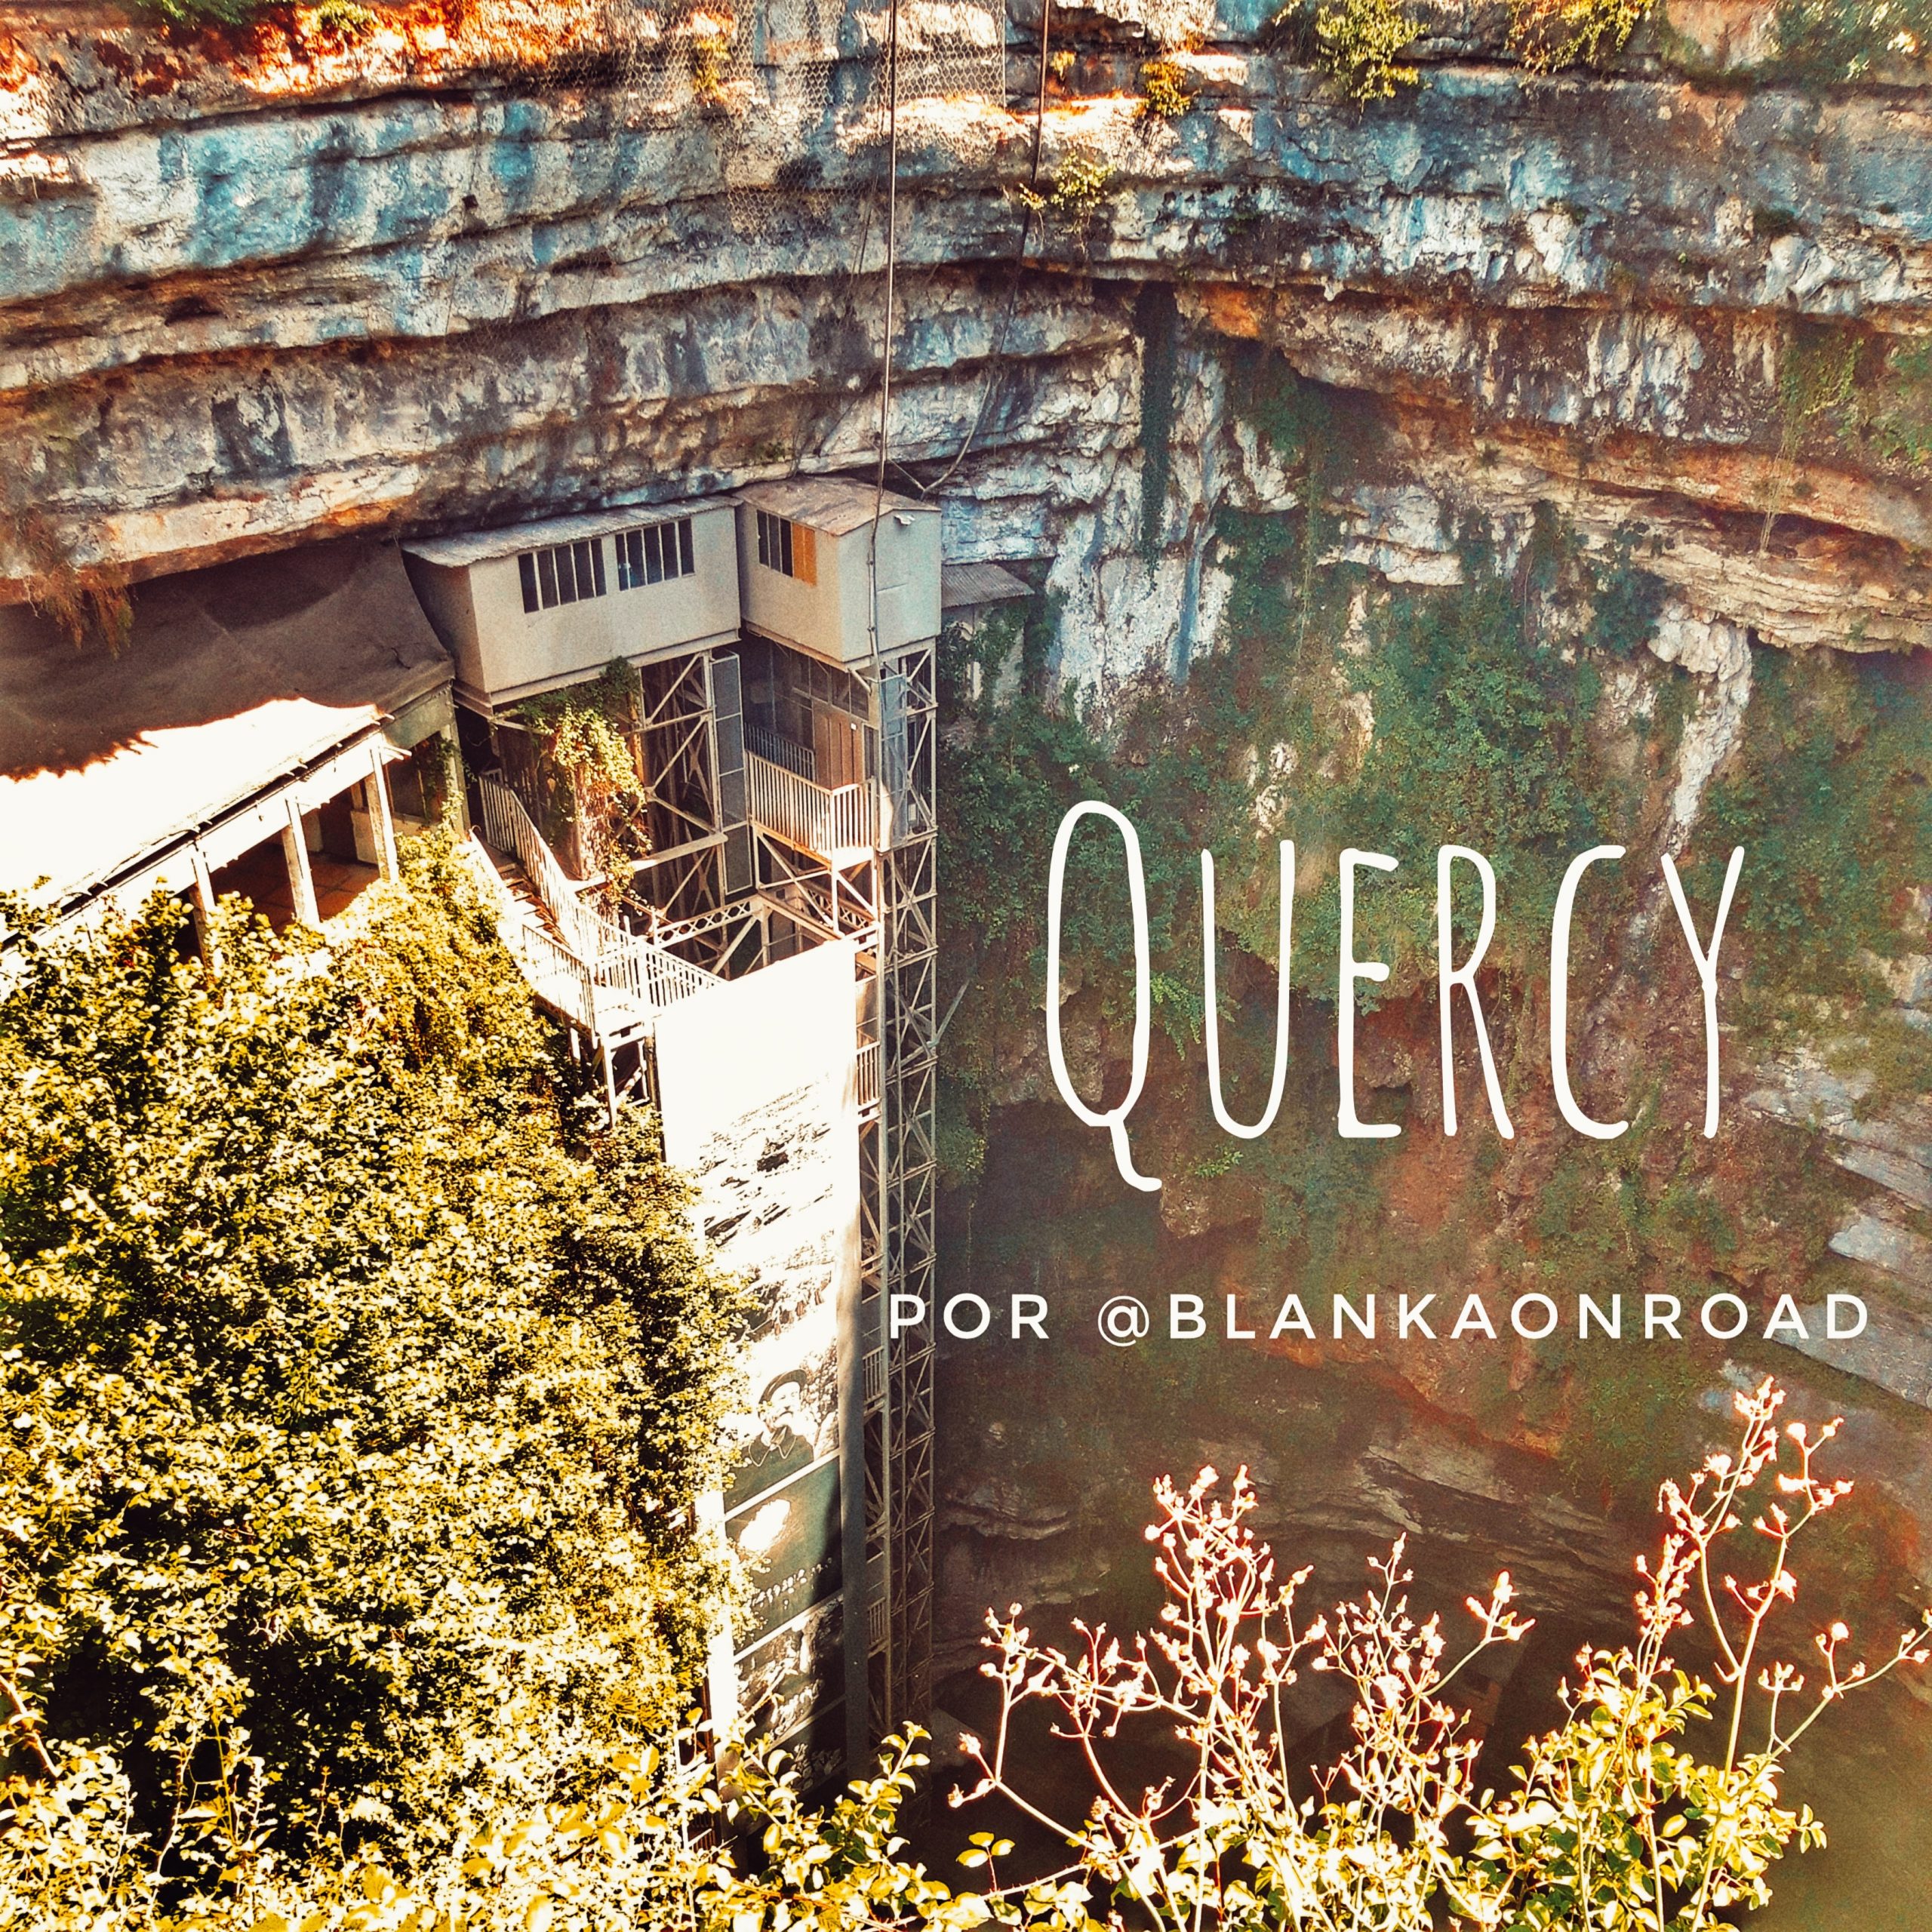 En este momento estás viendo De ruta por el Parque Natural du Quercy en Francia por @blankaonroad